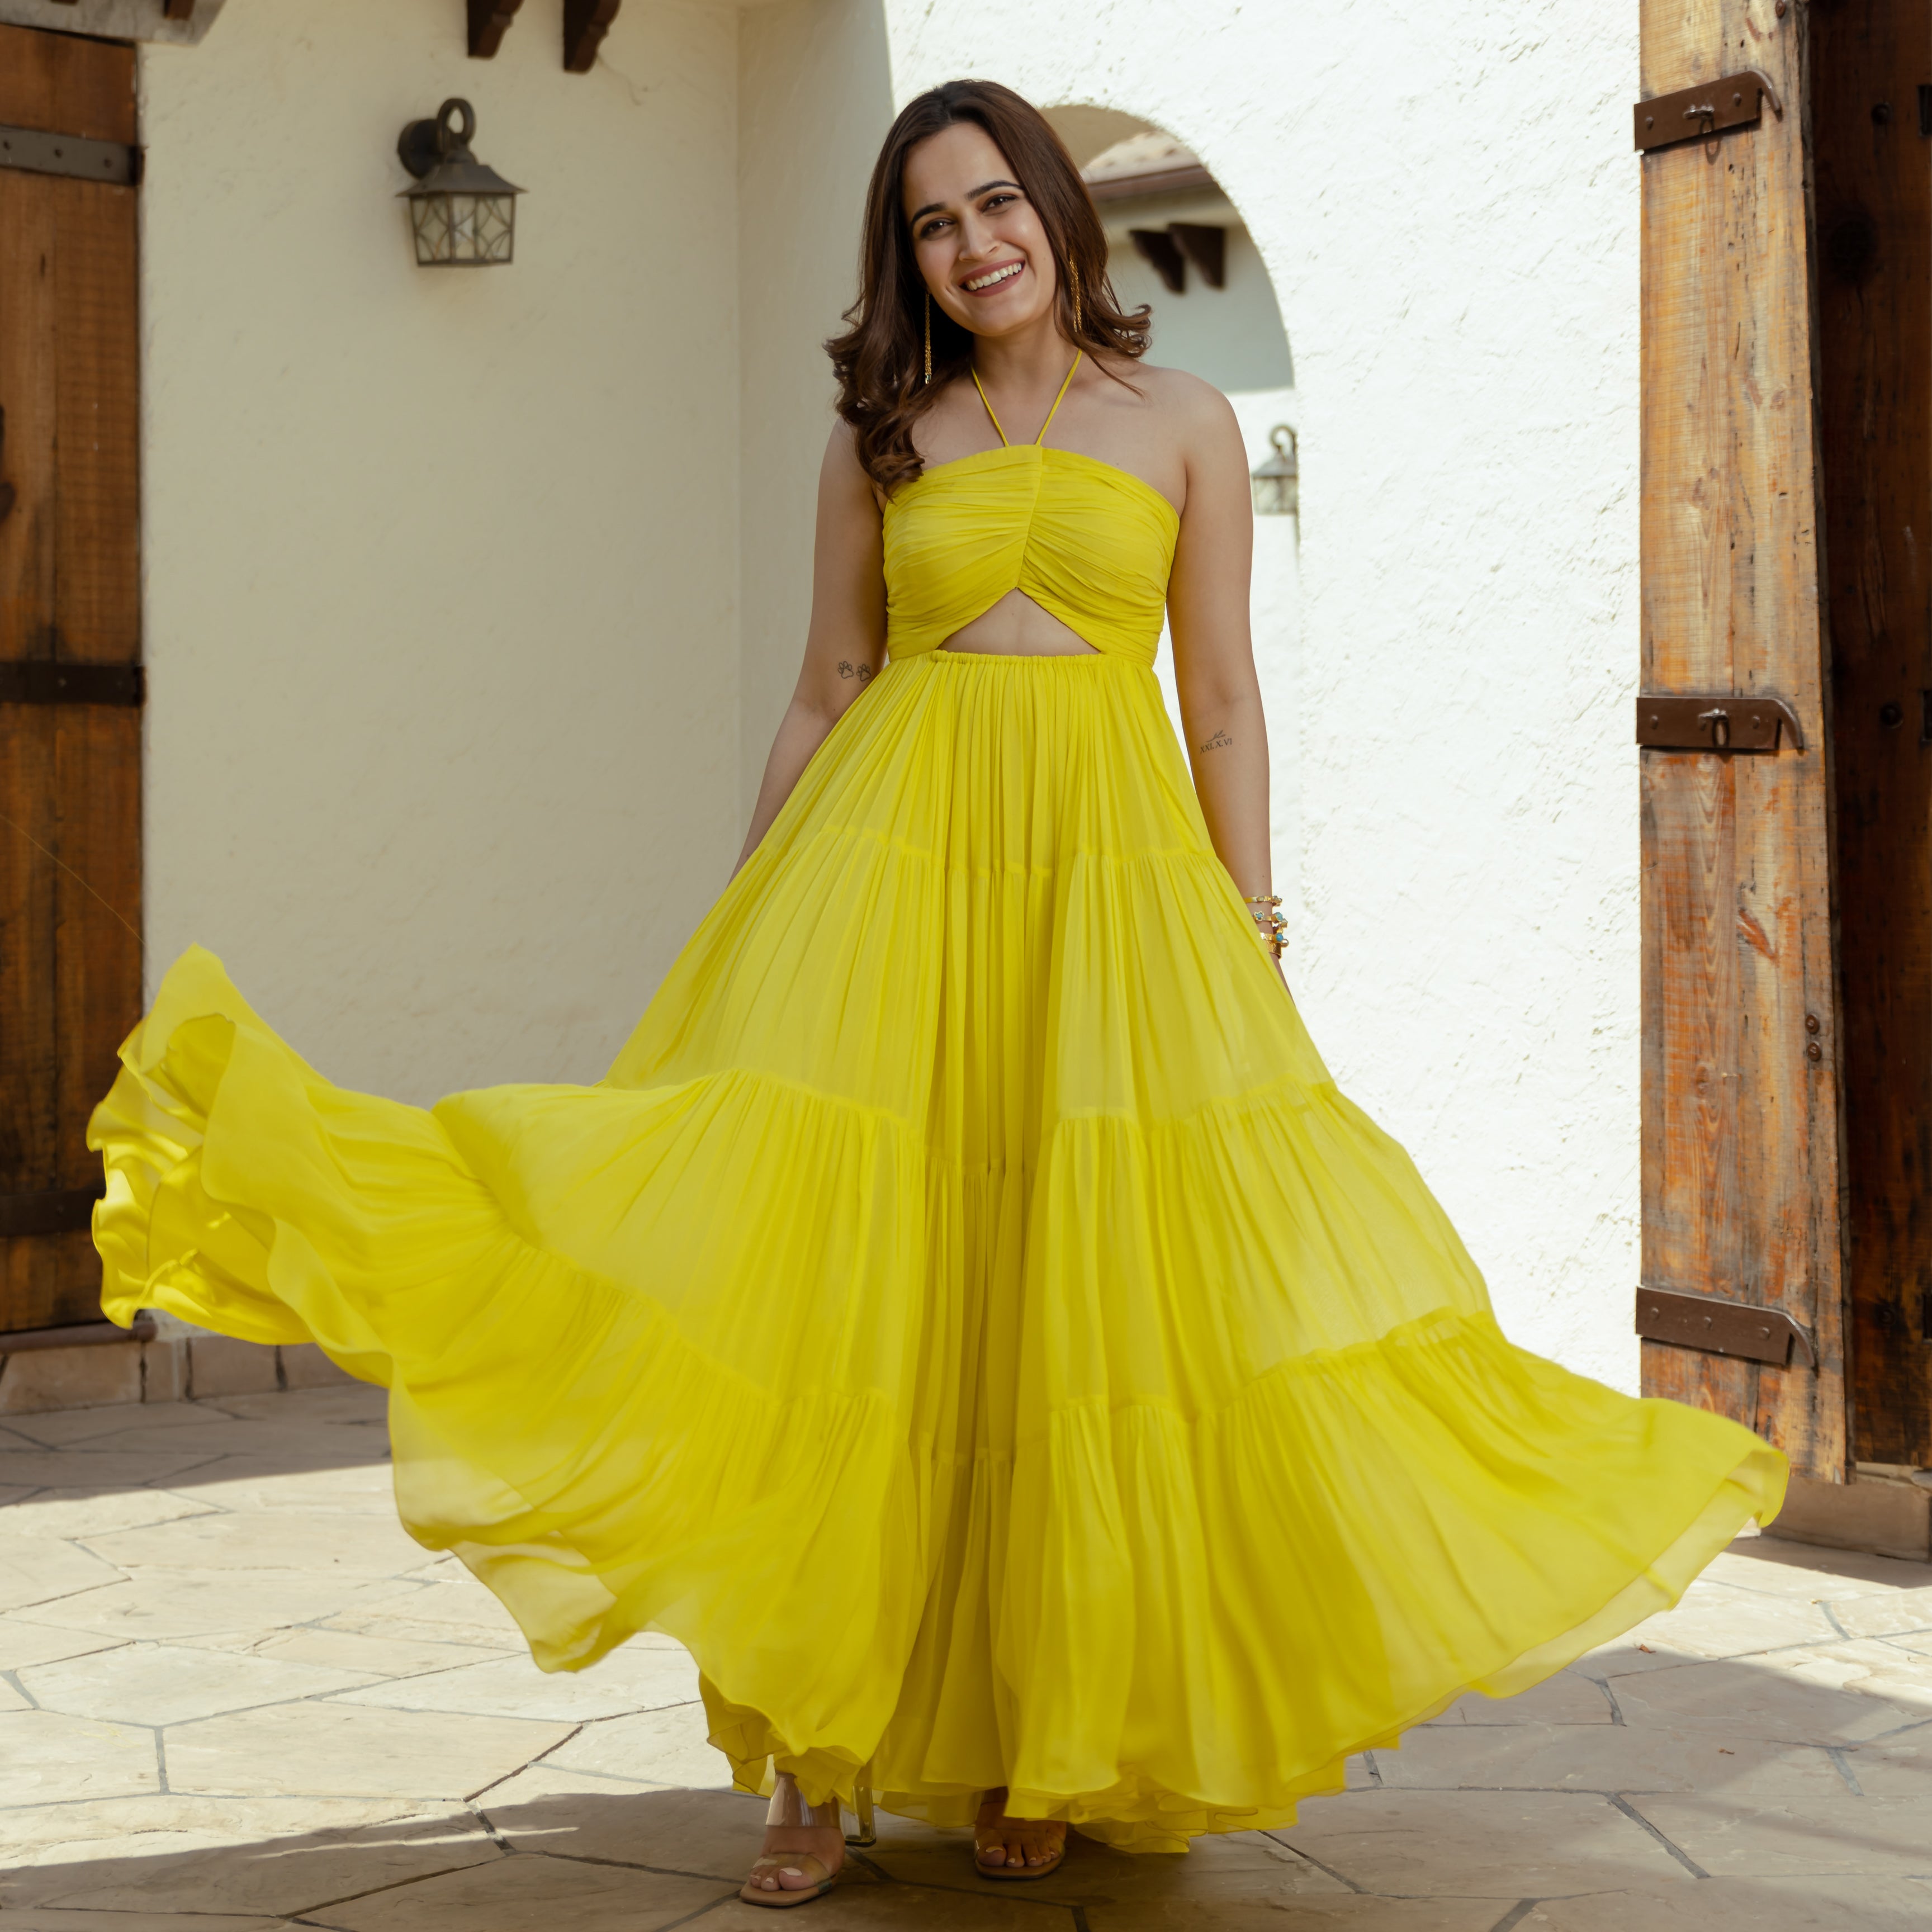 Yellow Tier Halter neck dress for women online